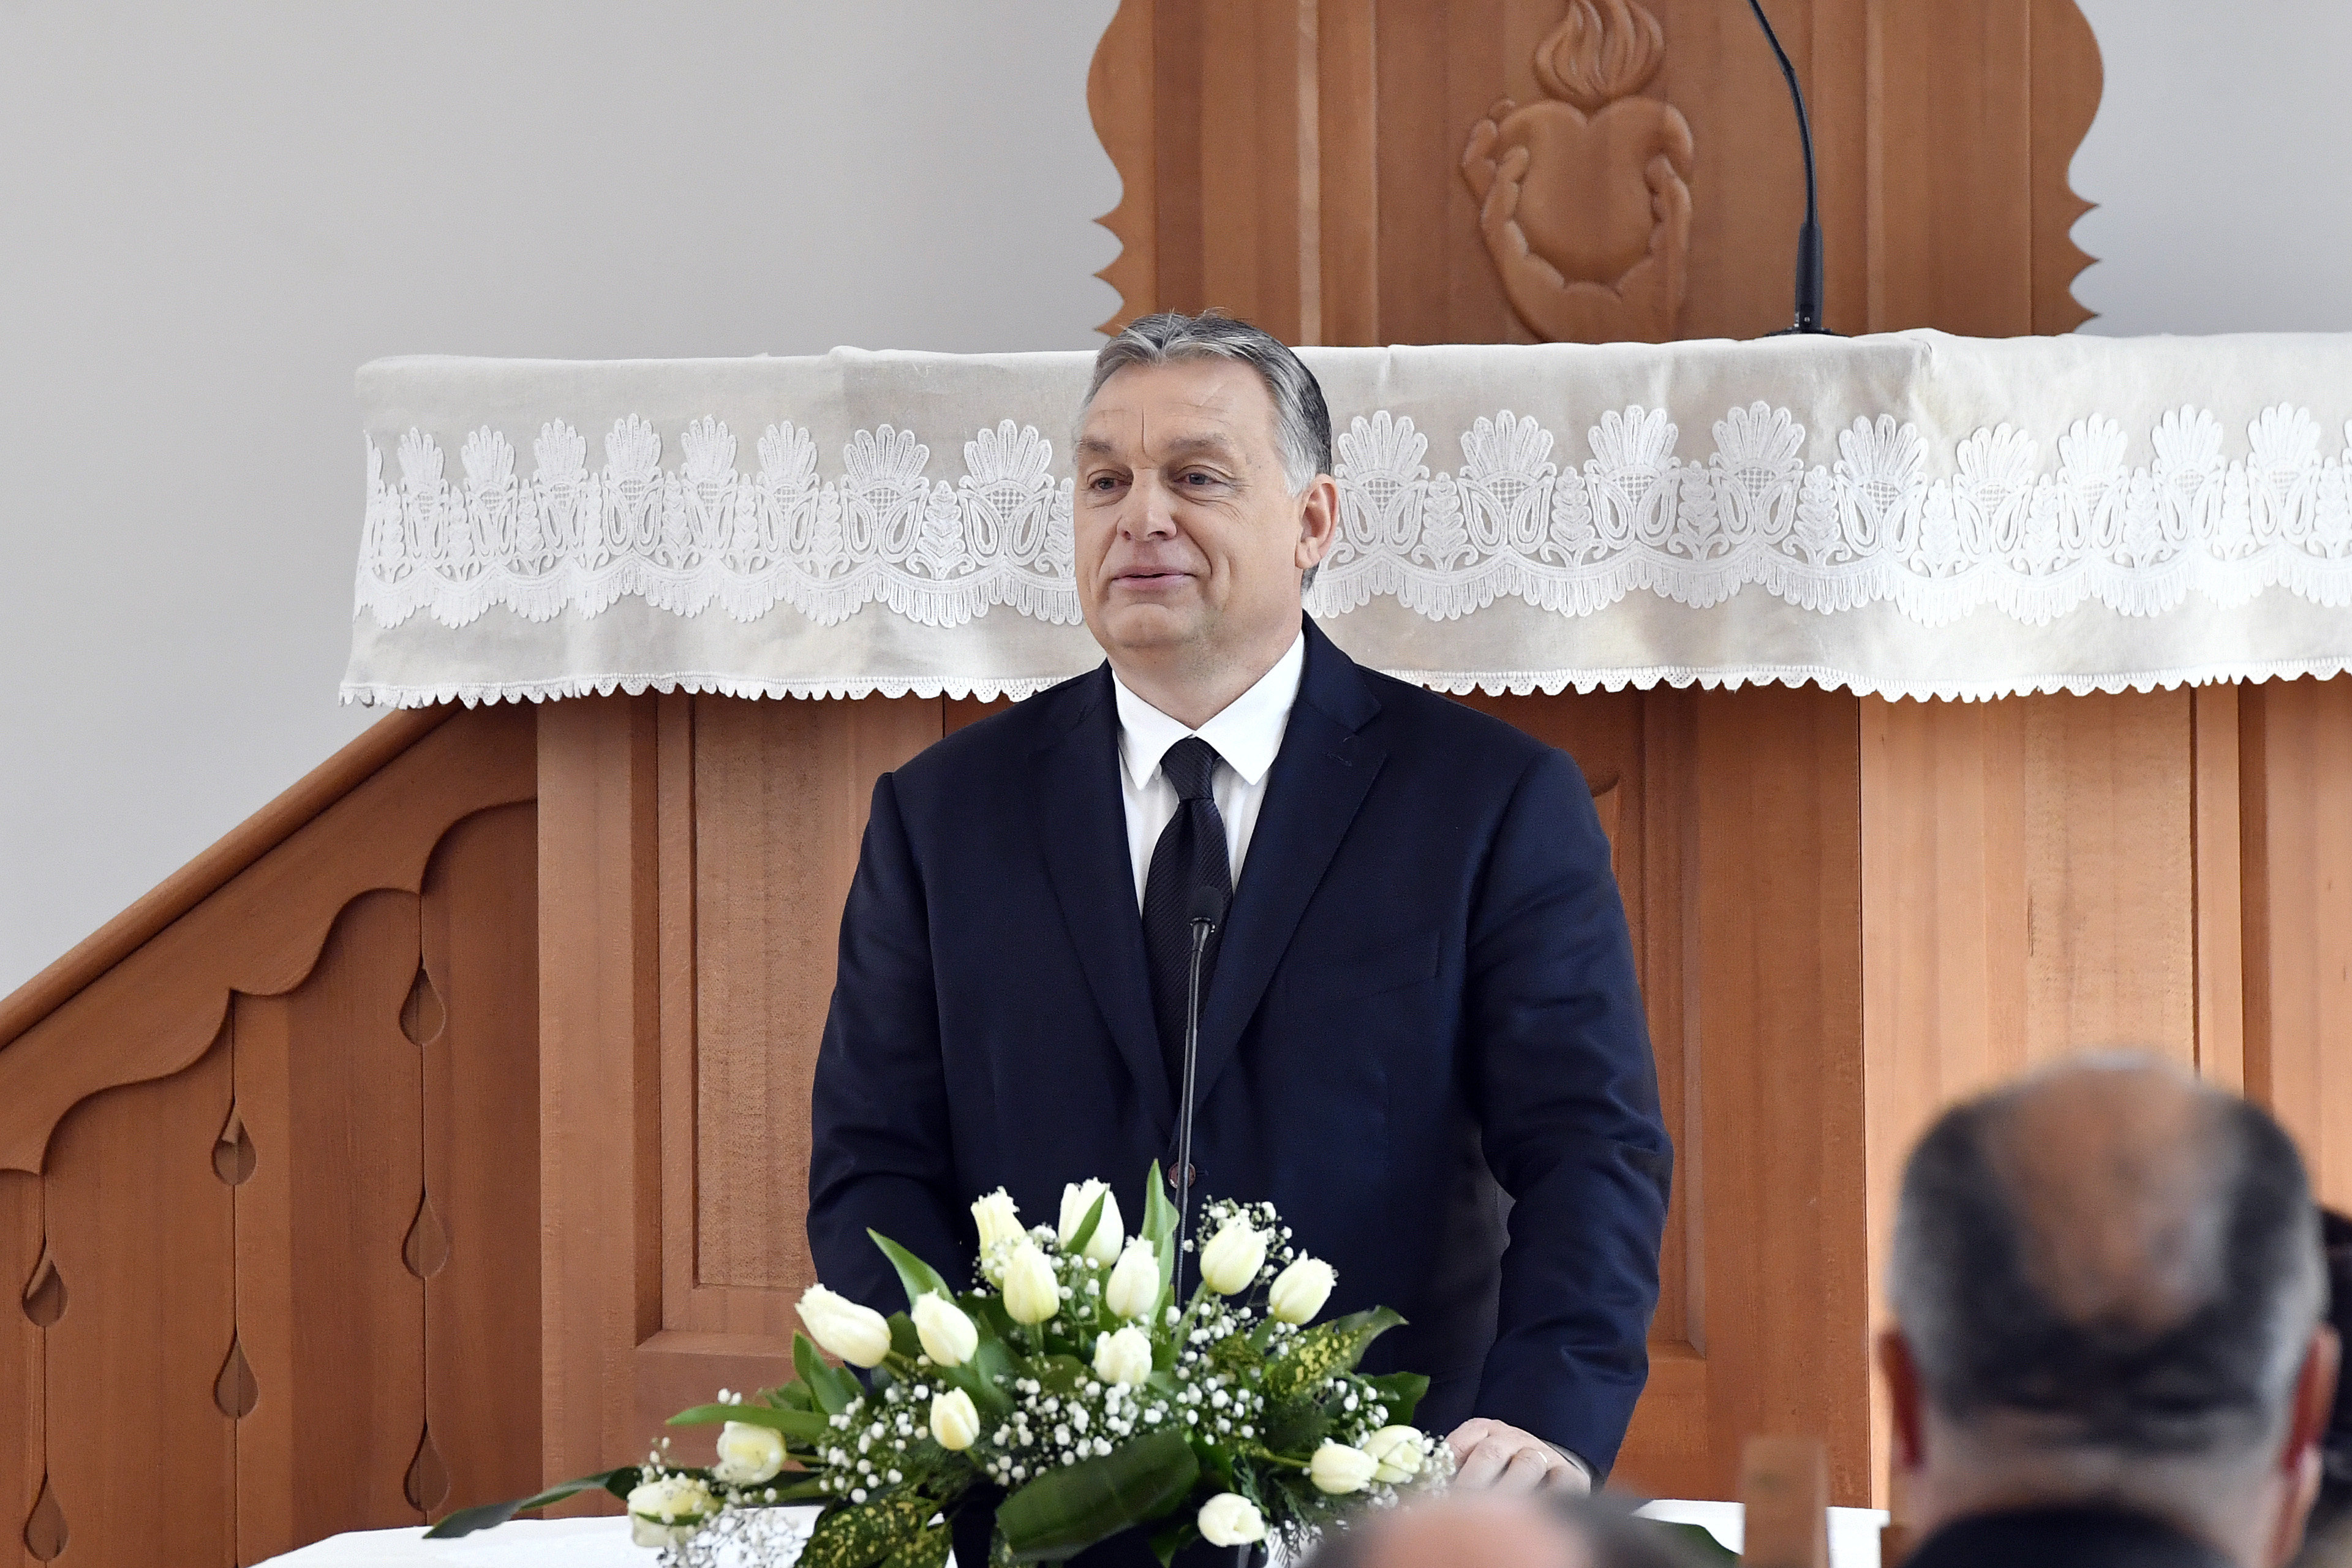 A kormány 1 milliárdot ad Orbán gyülekezetének református óvodára